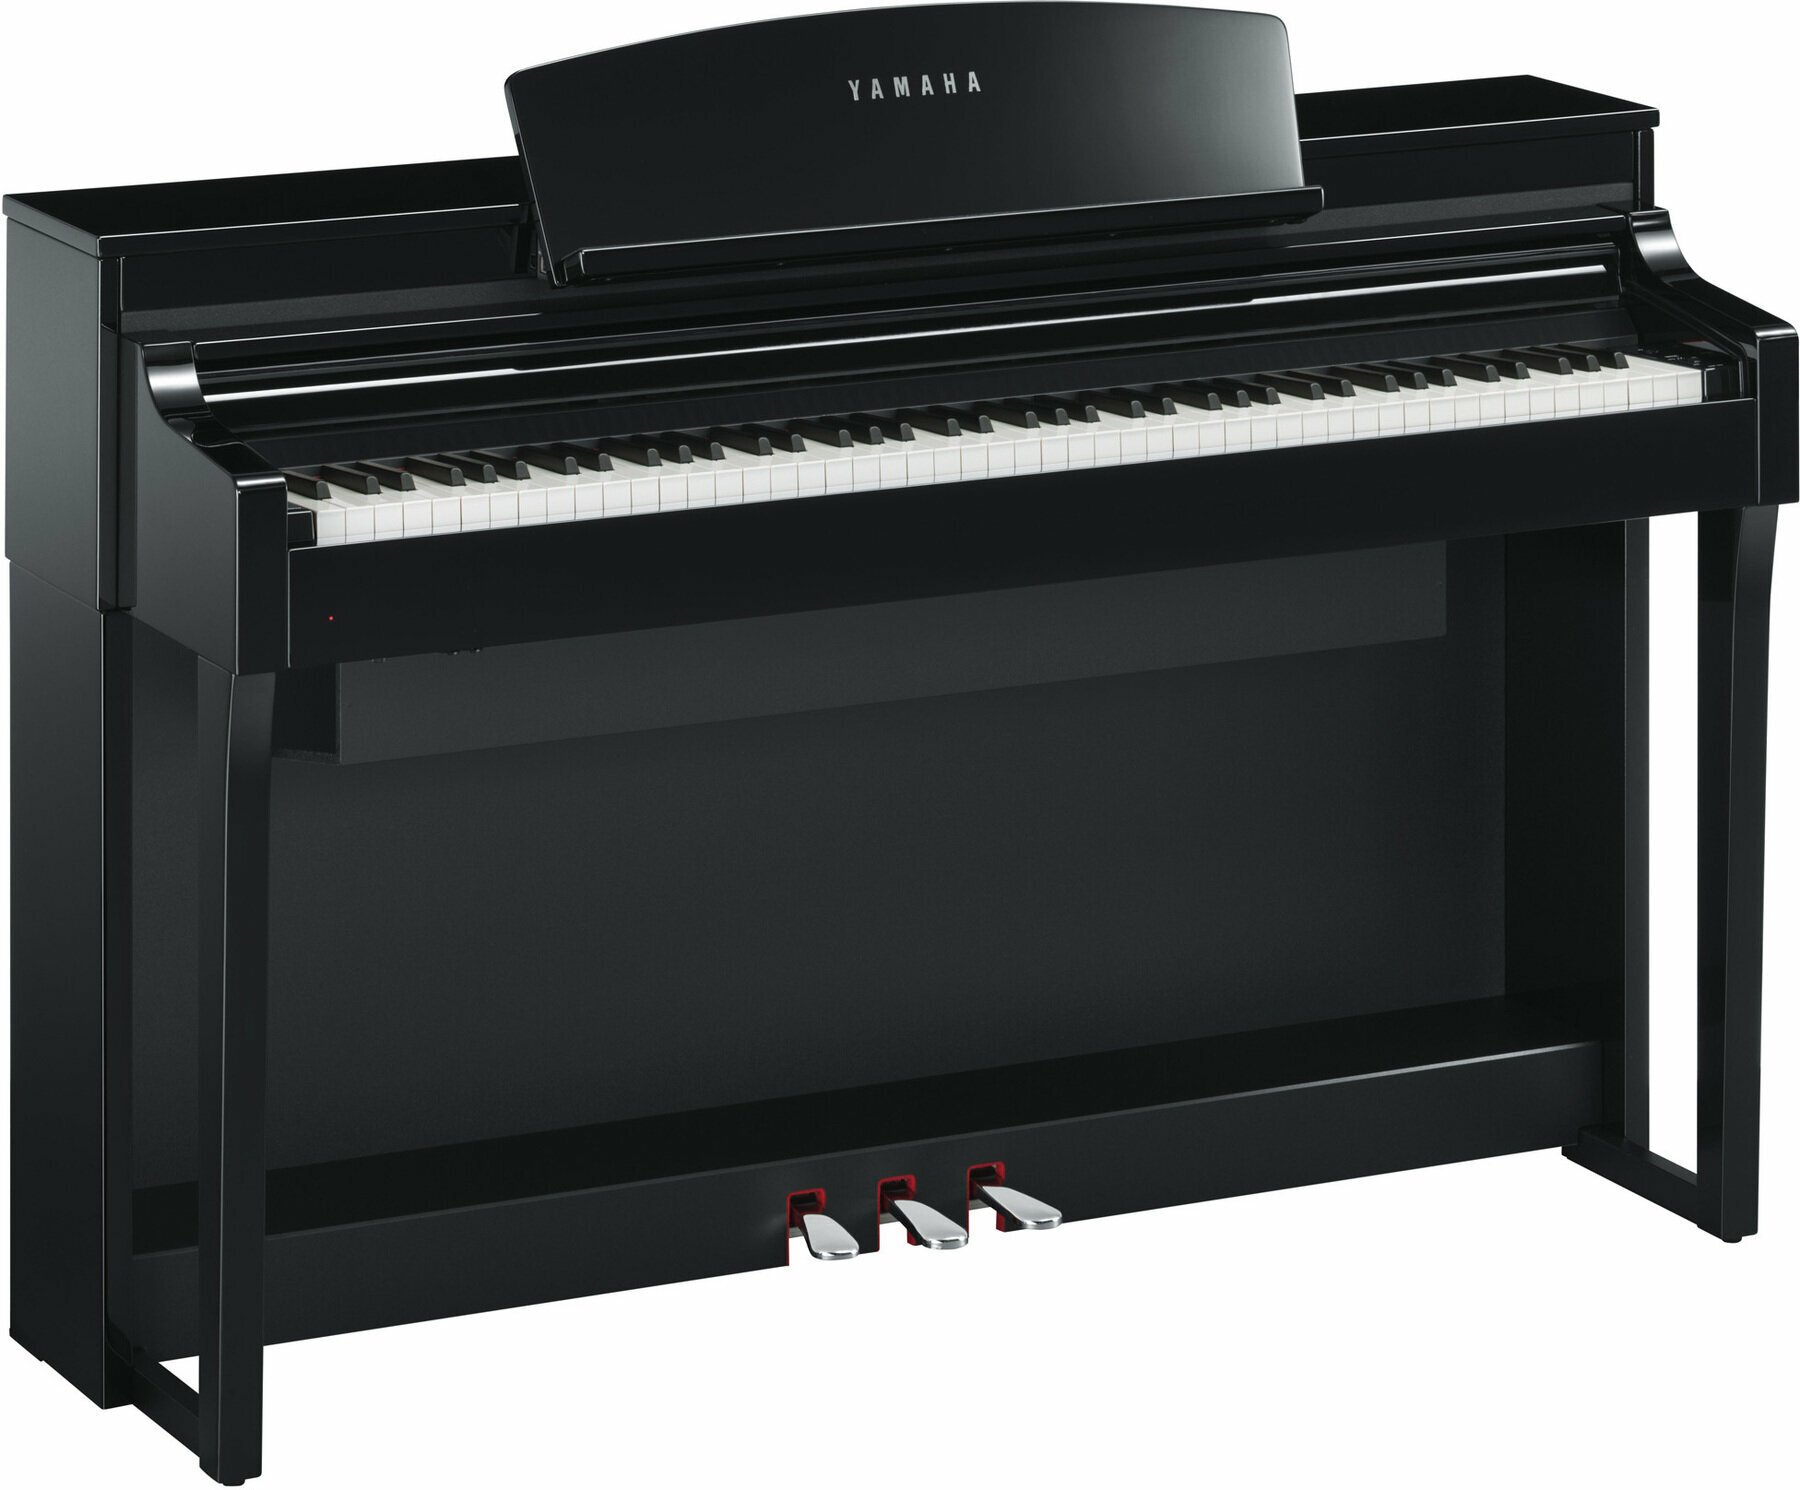 Digital Piano Yamaha CSP 170 Polished Ebony Digital Piano